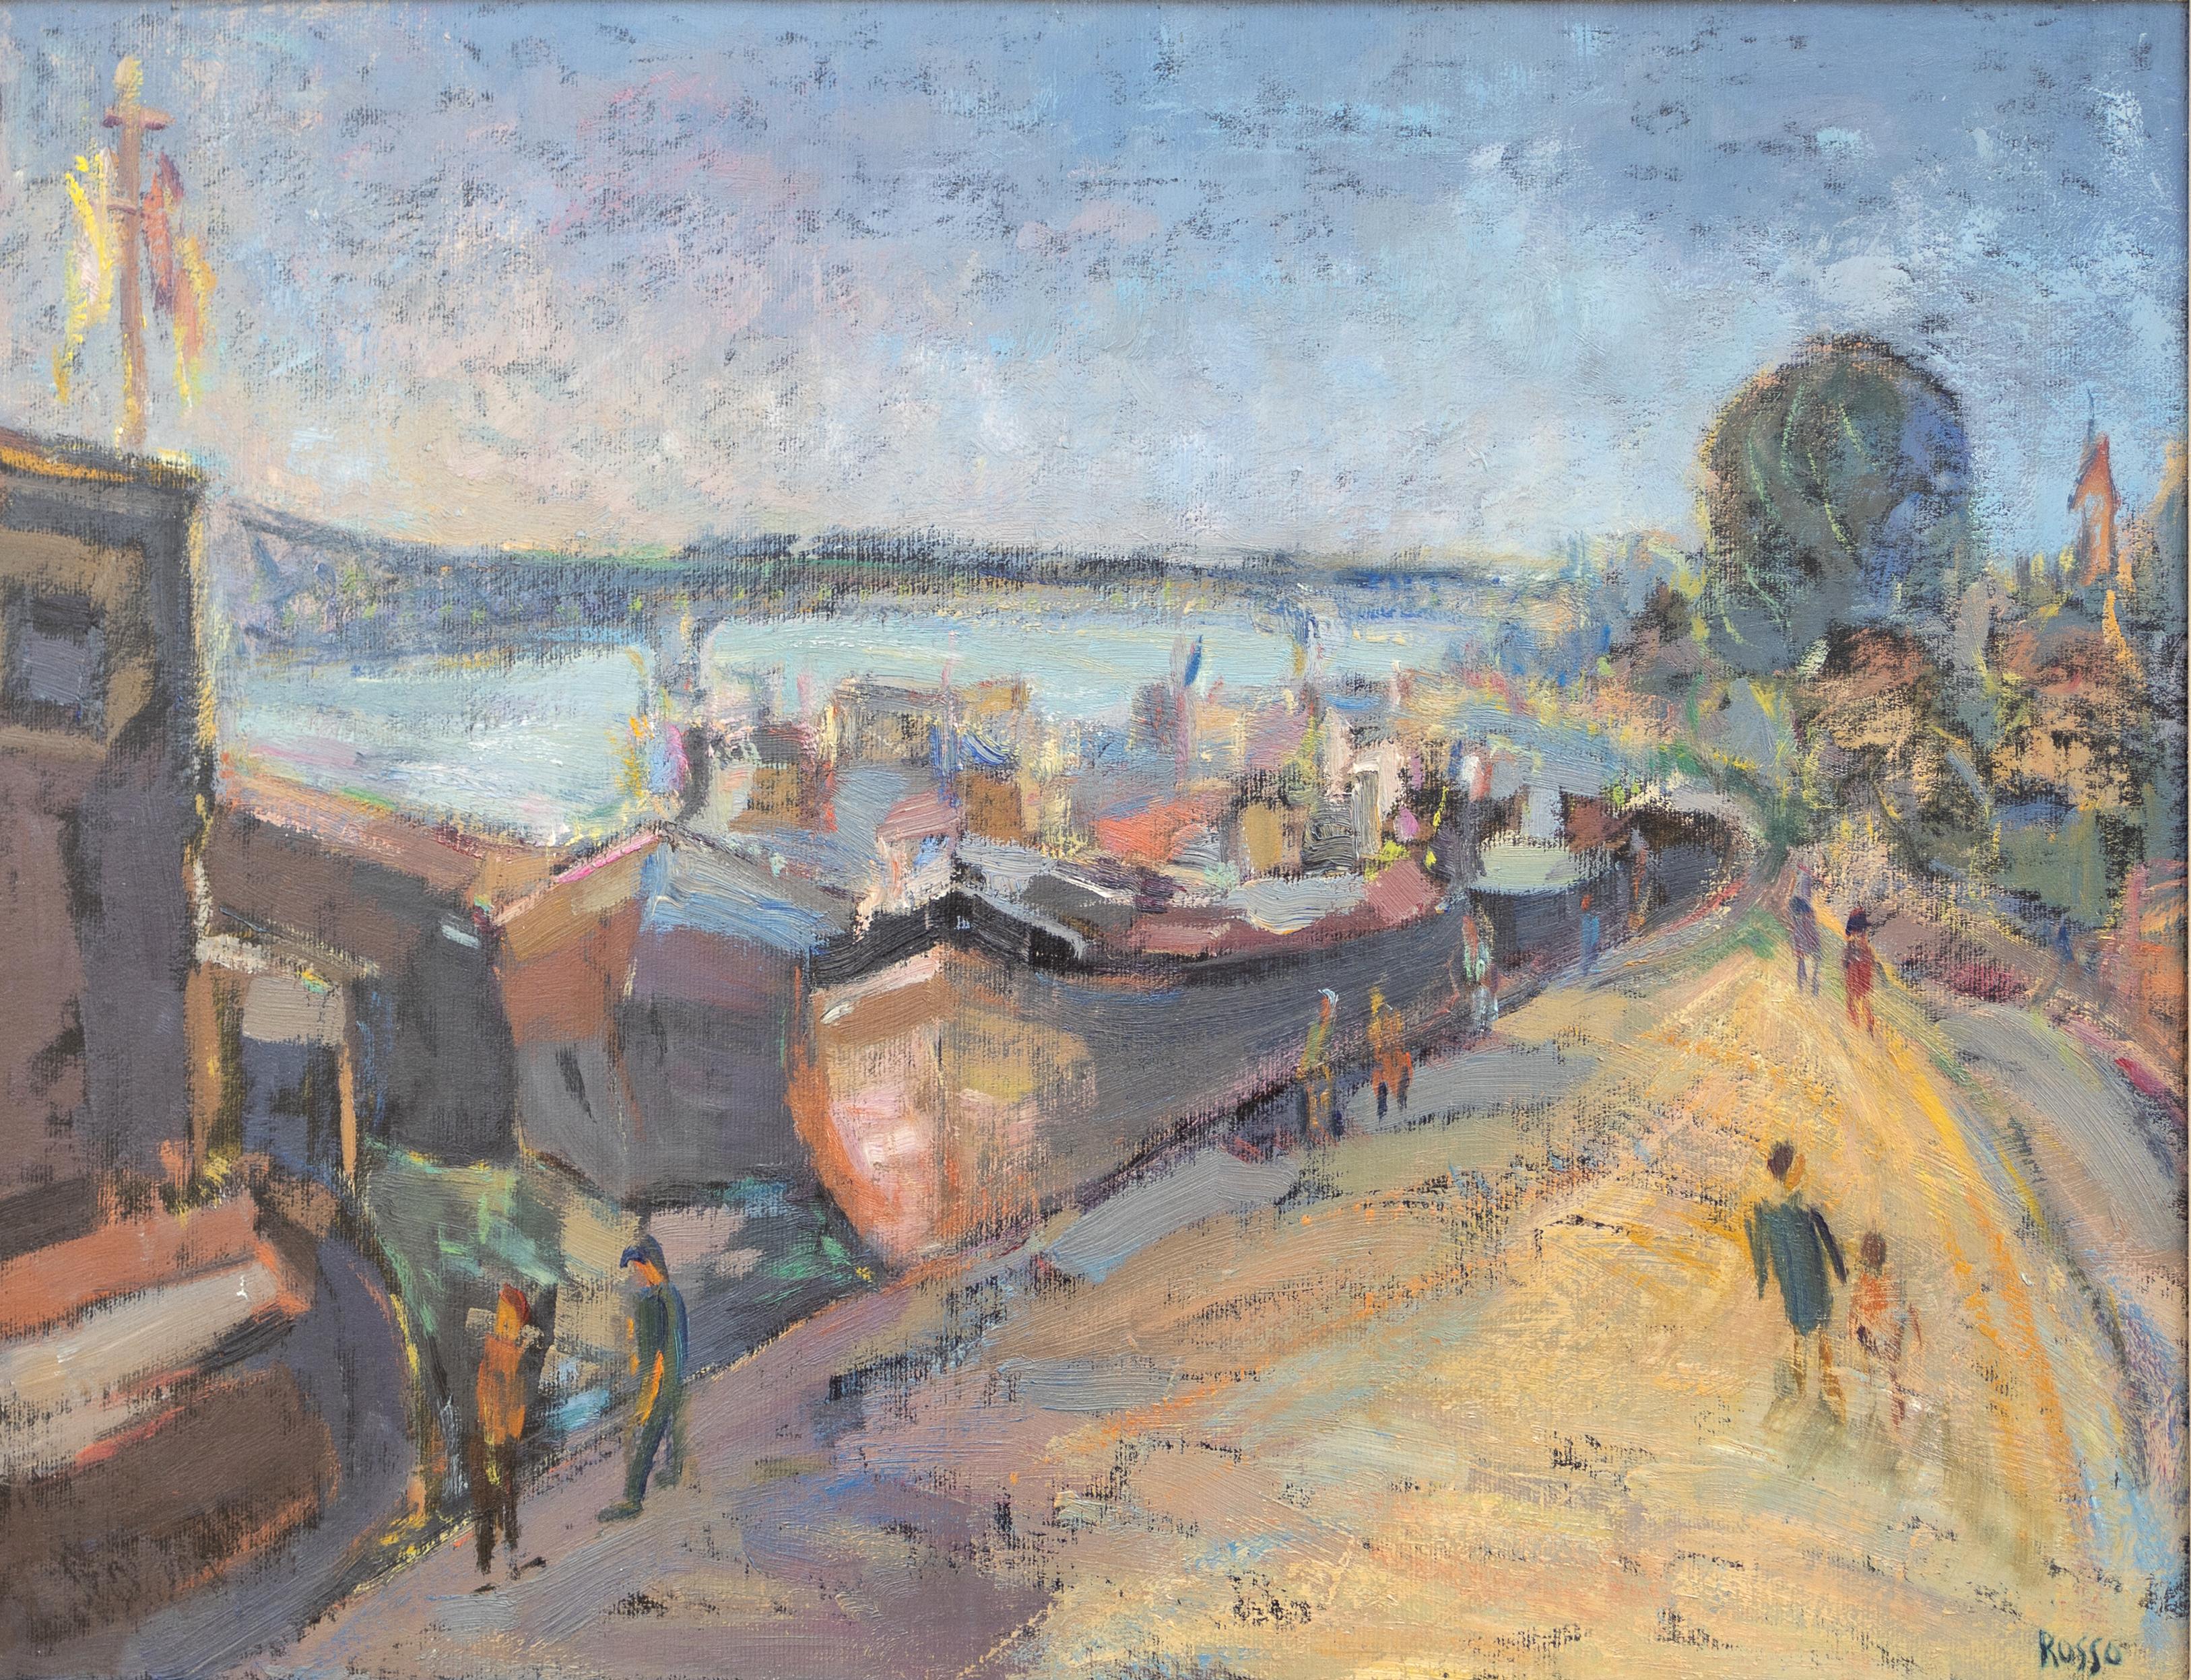 Mario Russo Figurative Painting - Harbor Scene Impressionist Landscape